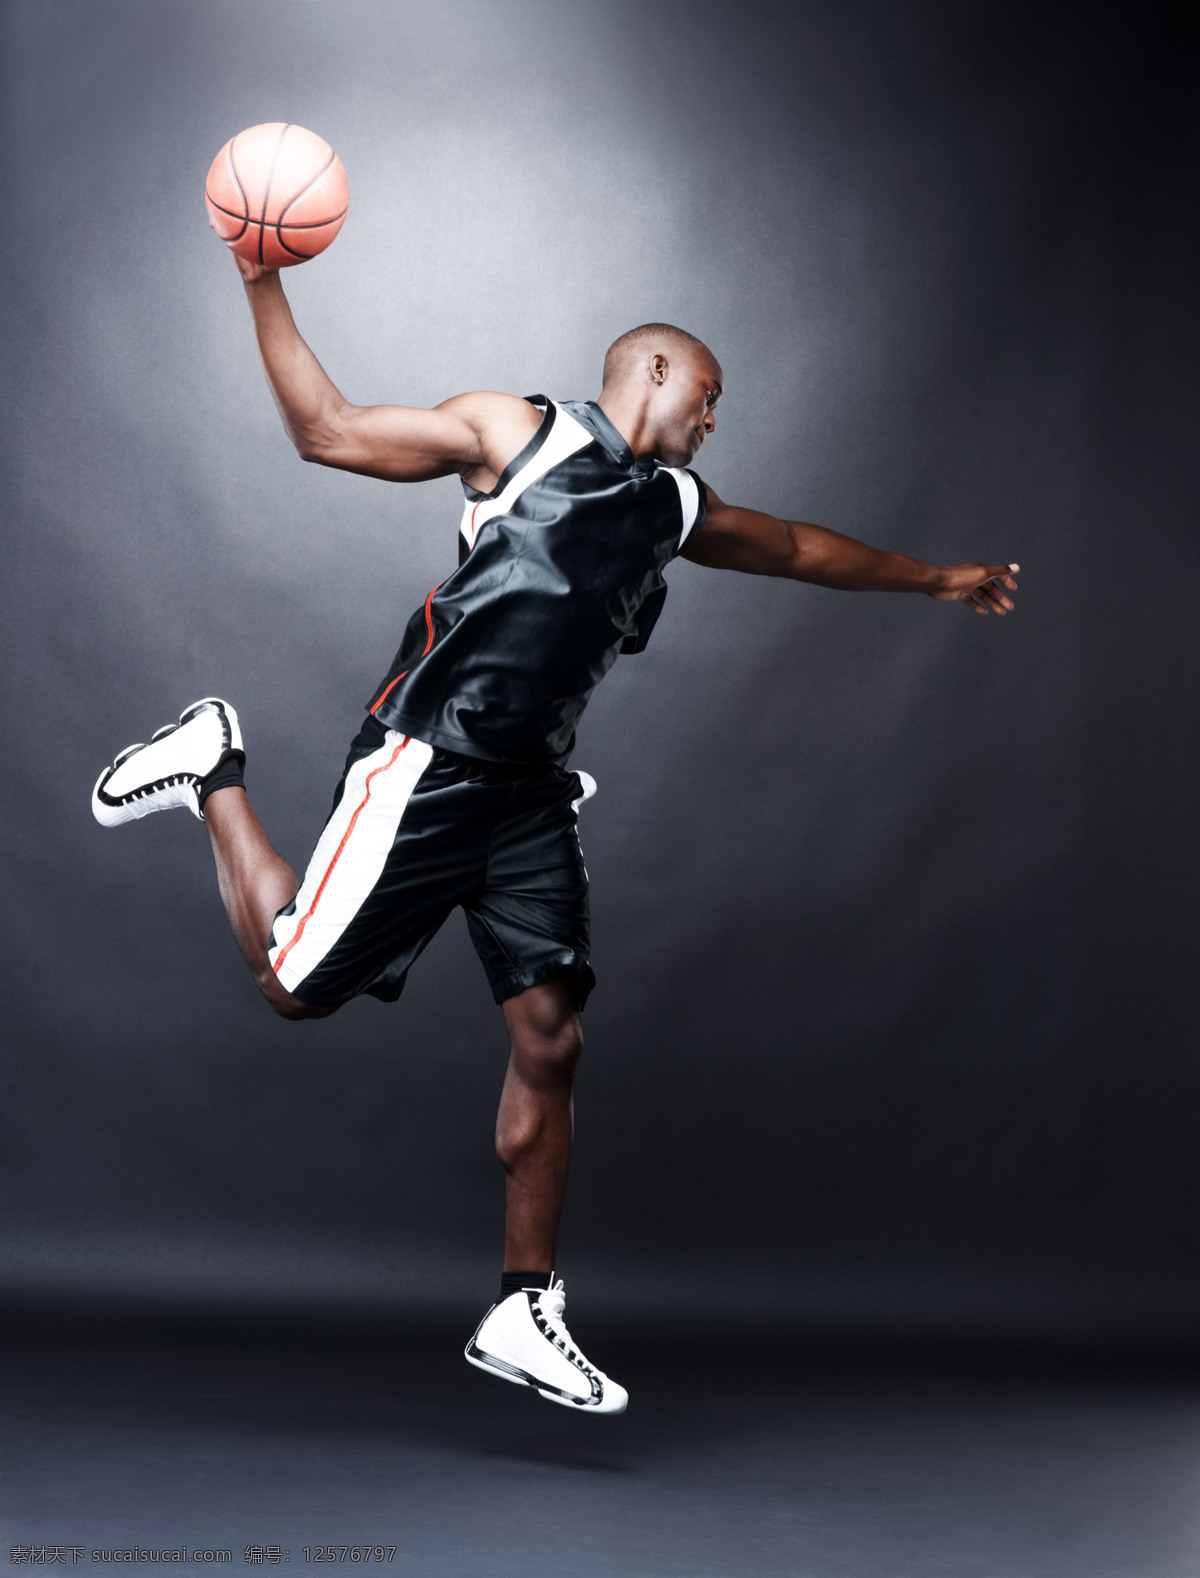 篮球 外国人 男人 健壮的男人 运动 体育运动 打篮球 球星 运动鞋 广告 素材图片 男人图片 人物图片